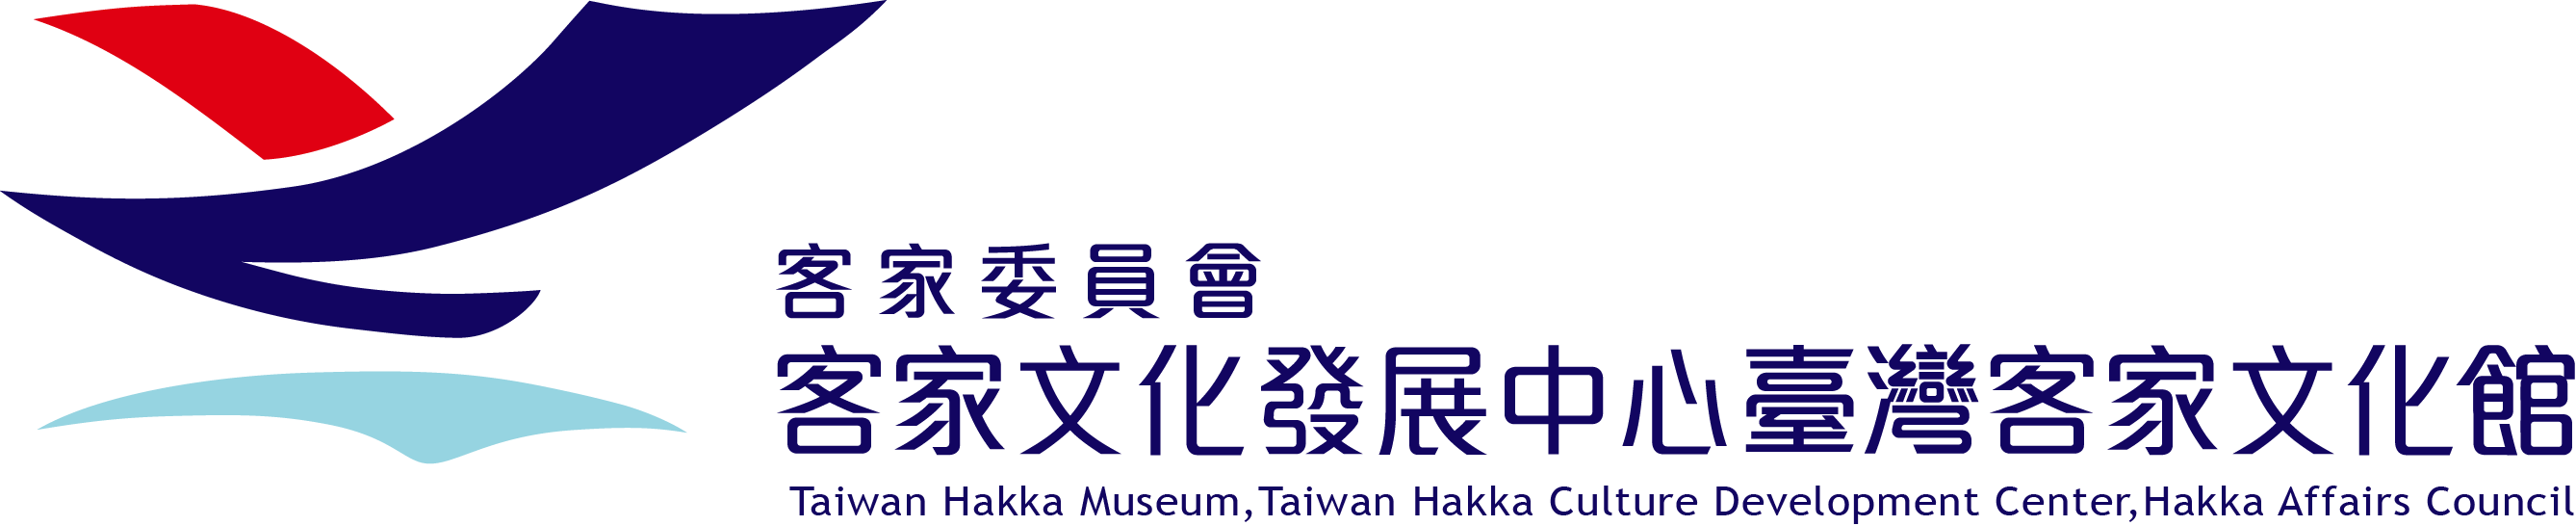 臺灣客家文化館 Logo